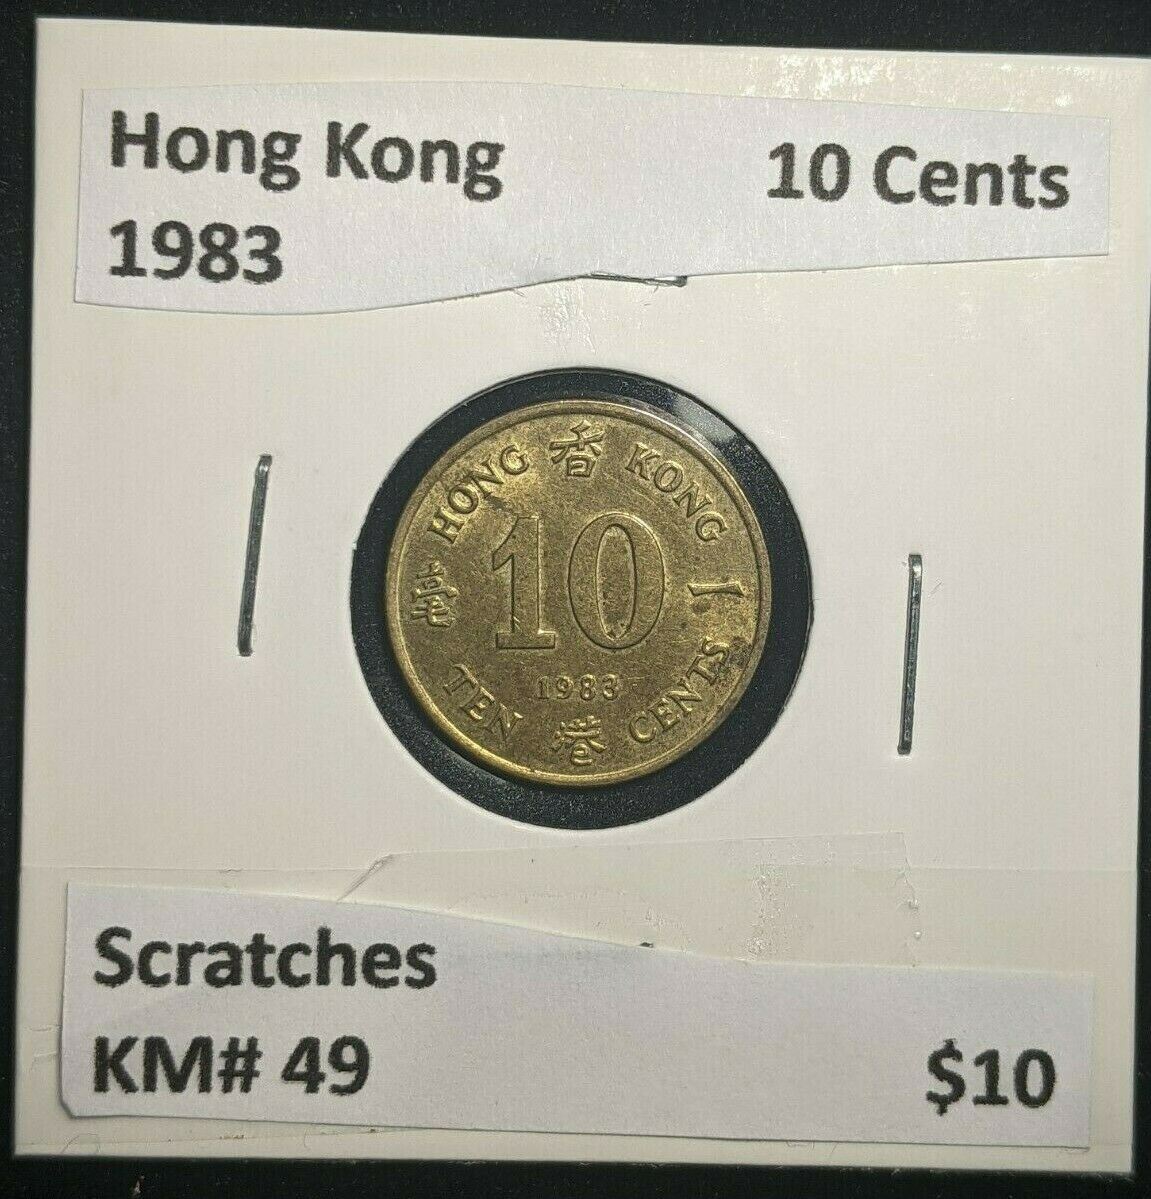 Hong Kong 1983 10 Cents KM# 49 Scratches #0274